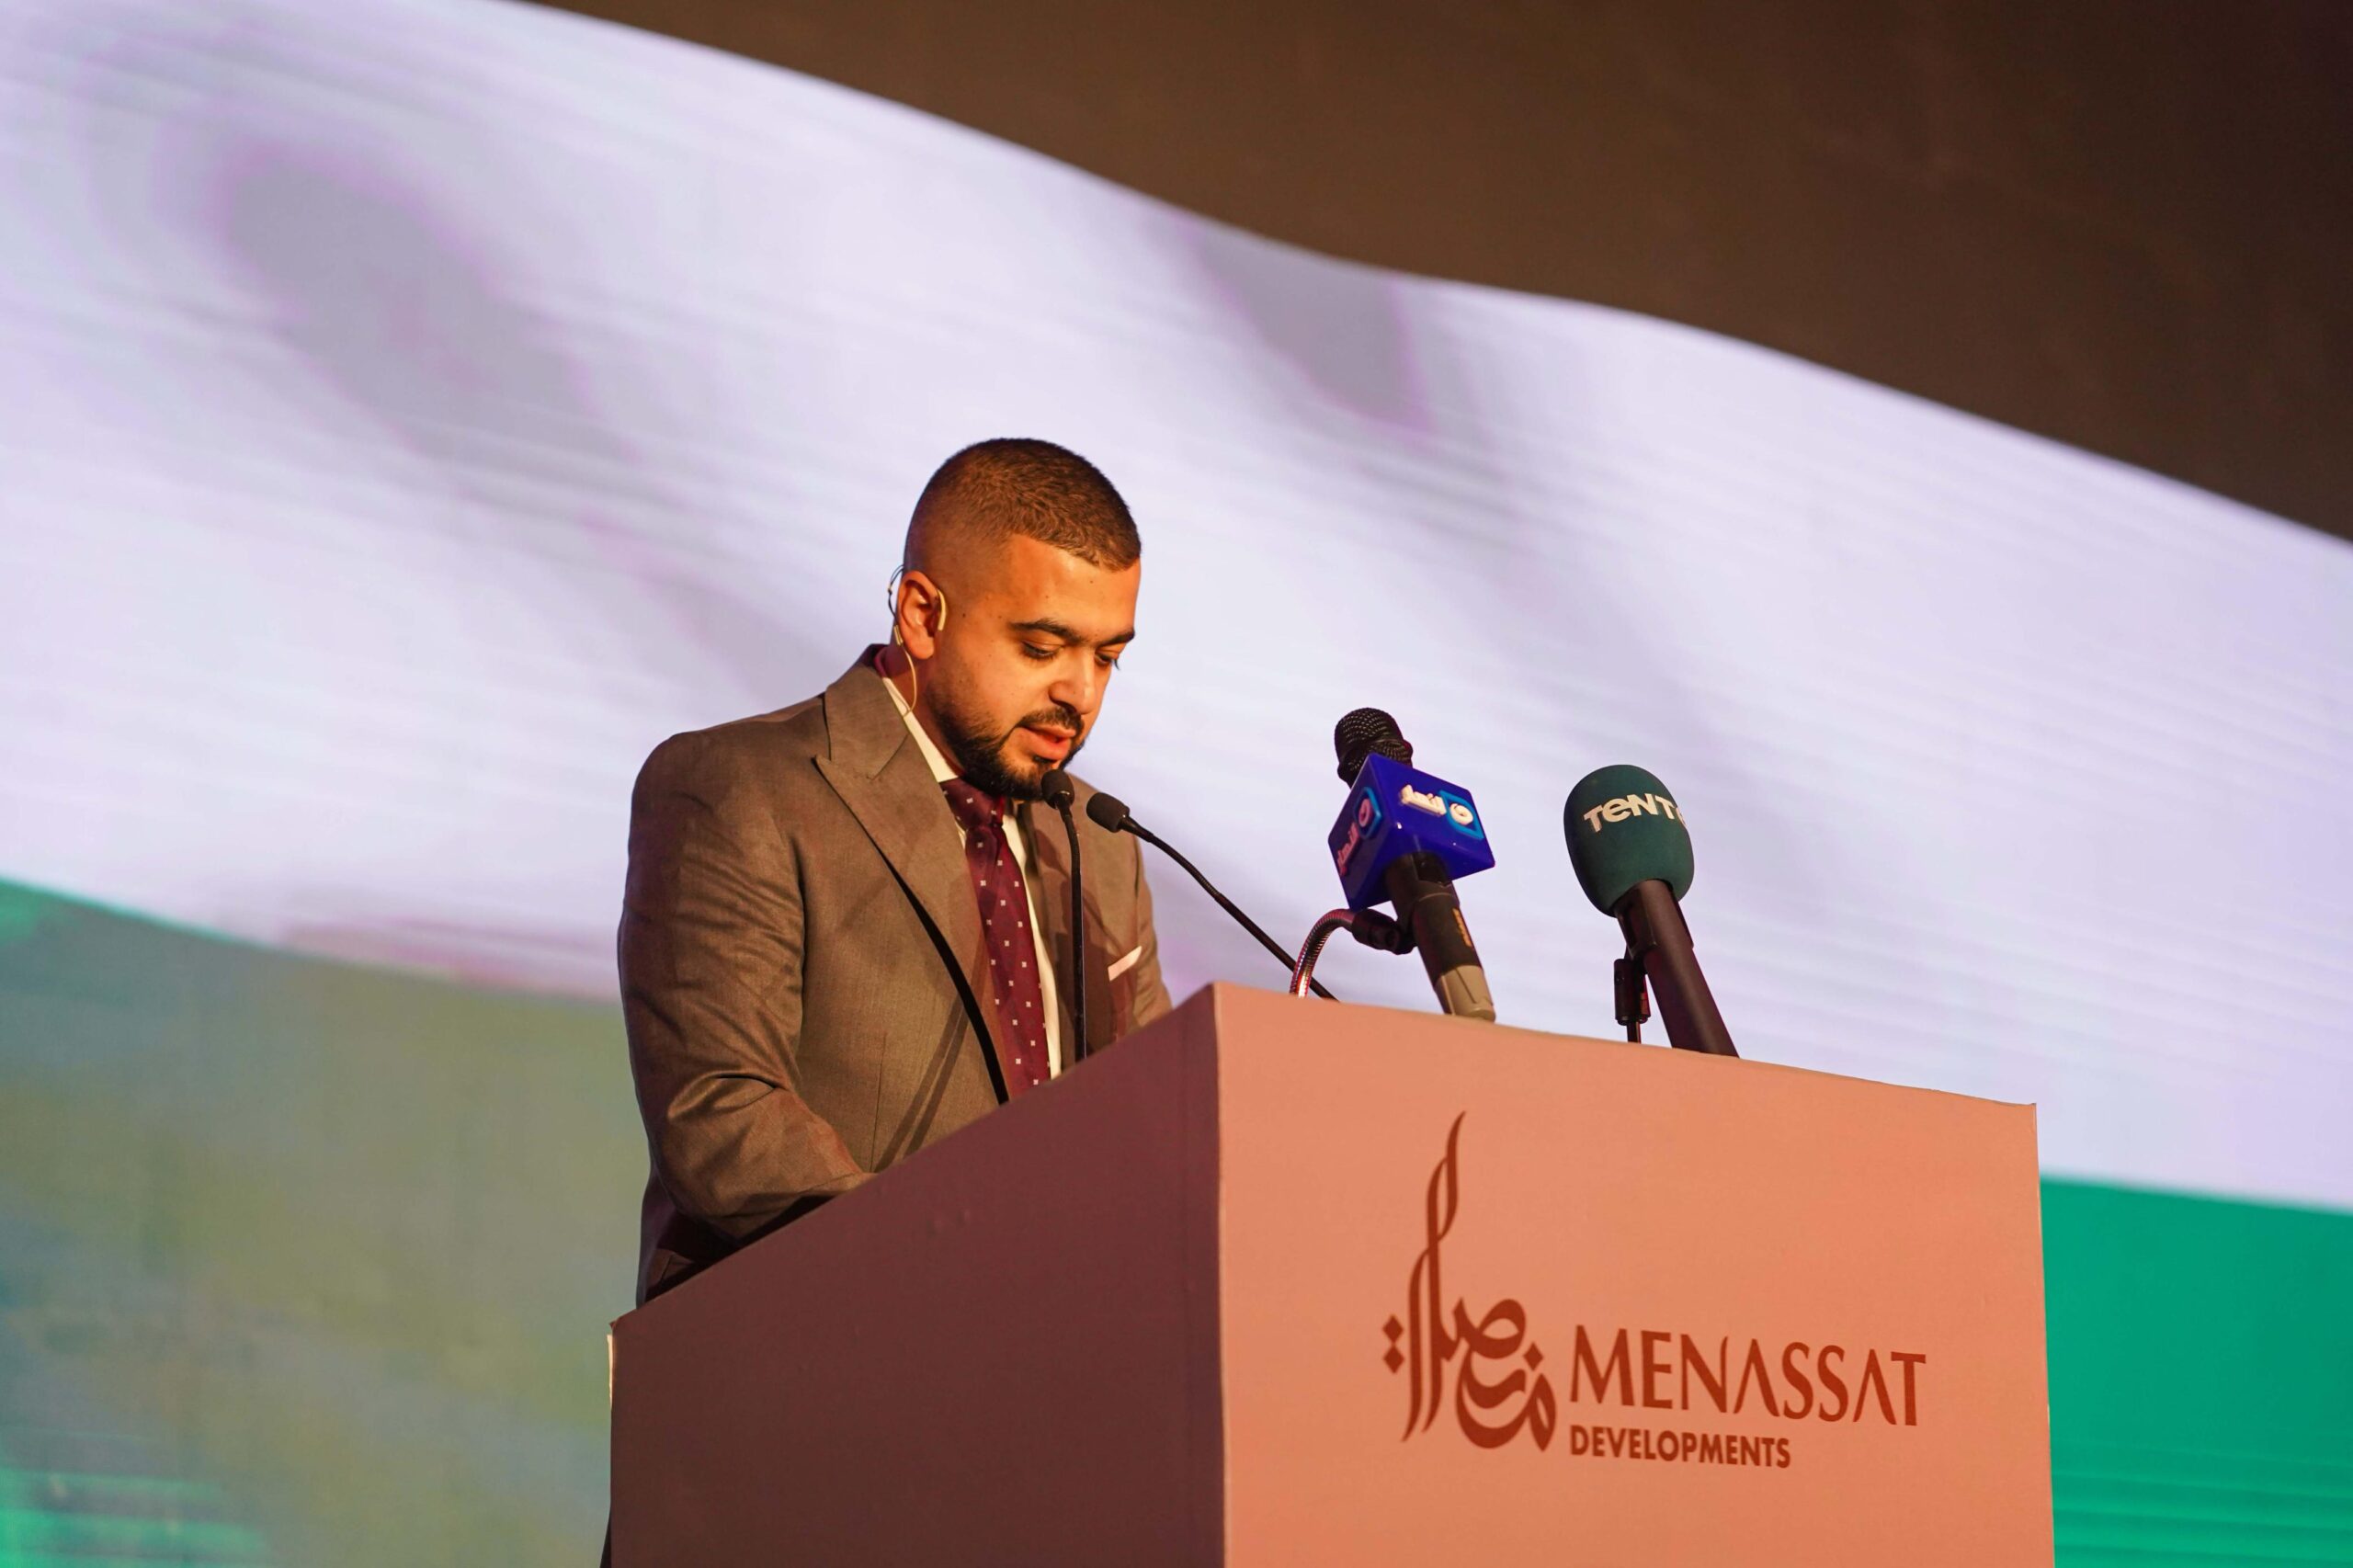 المهندس أحمد أمين مسعود، رئيس مجلس إدارة شركة منصات للتطوير العقاري